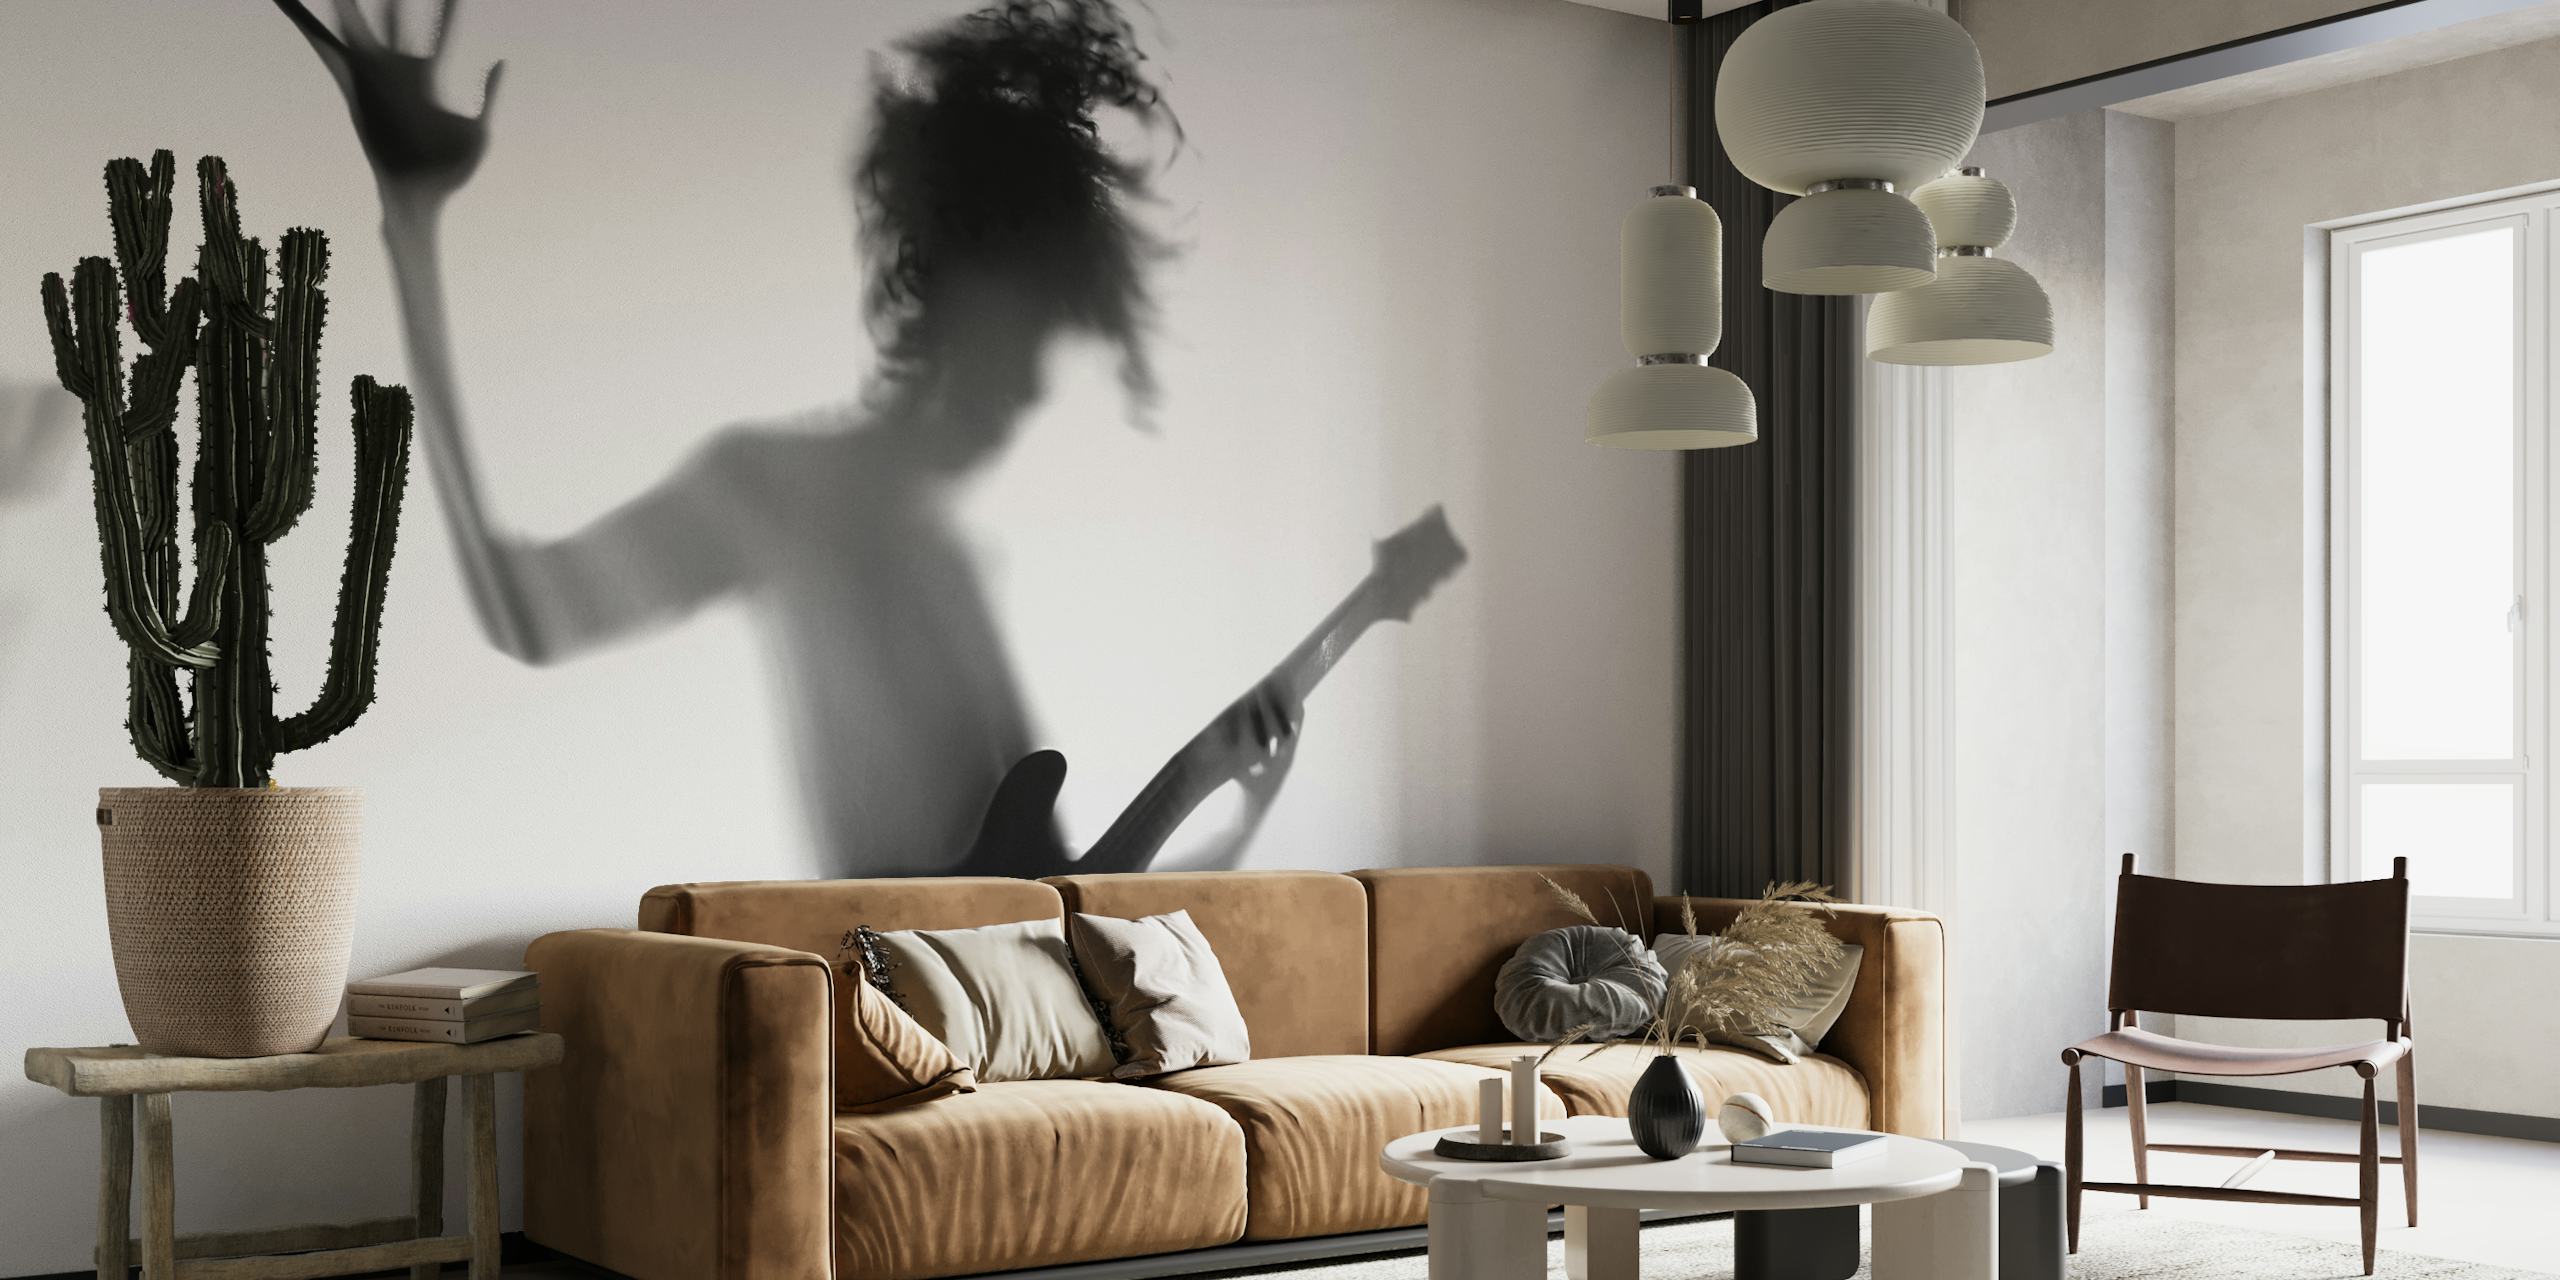 Silhouet van een persoon die gitaar speelt in een dynamische pose in zwart-wit.